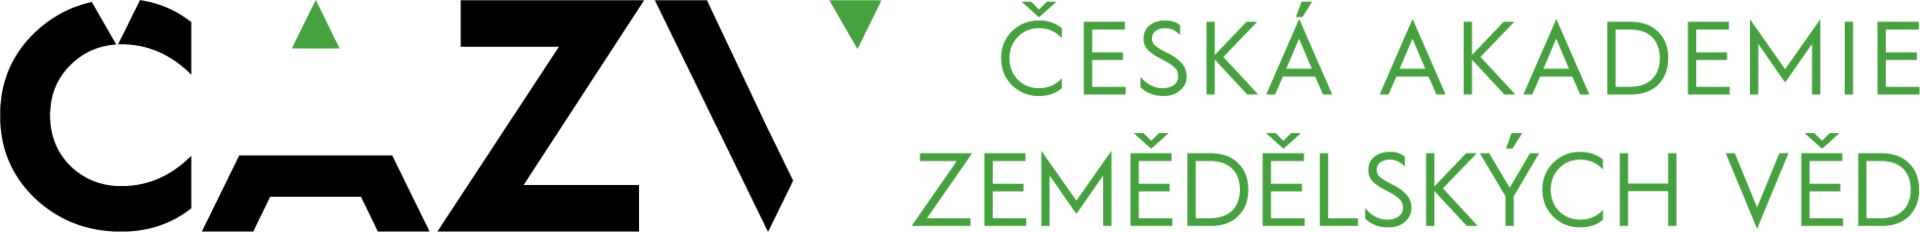 Česká akademie zemědělských věd logo